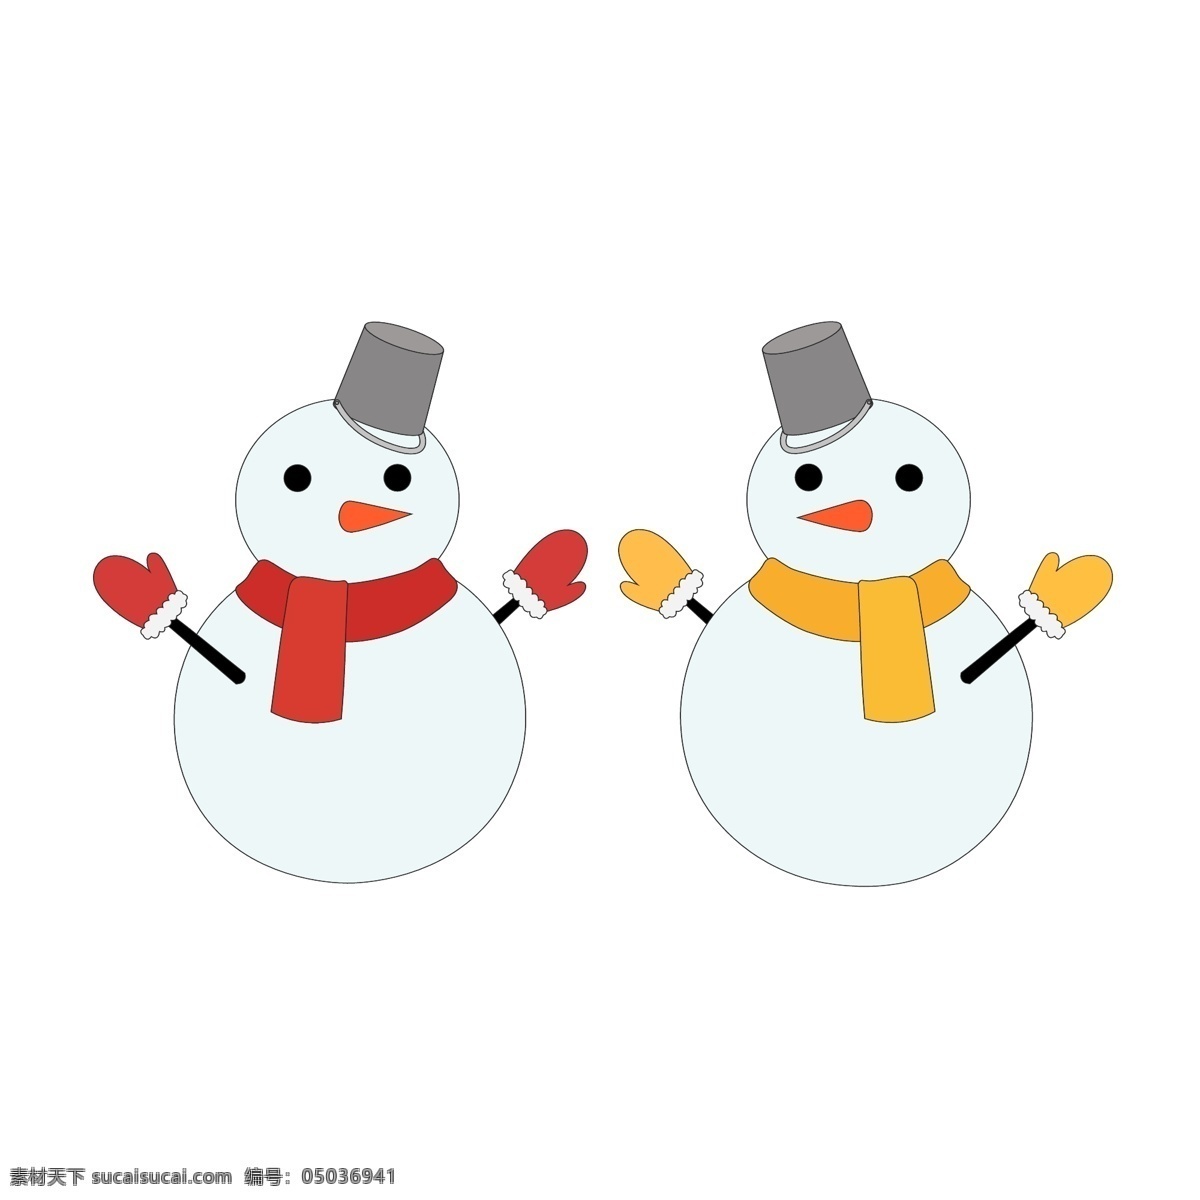 冬季 雪人 圣诞节 卡通 图标 矢量 贺卡 儿童